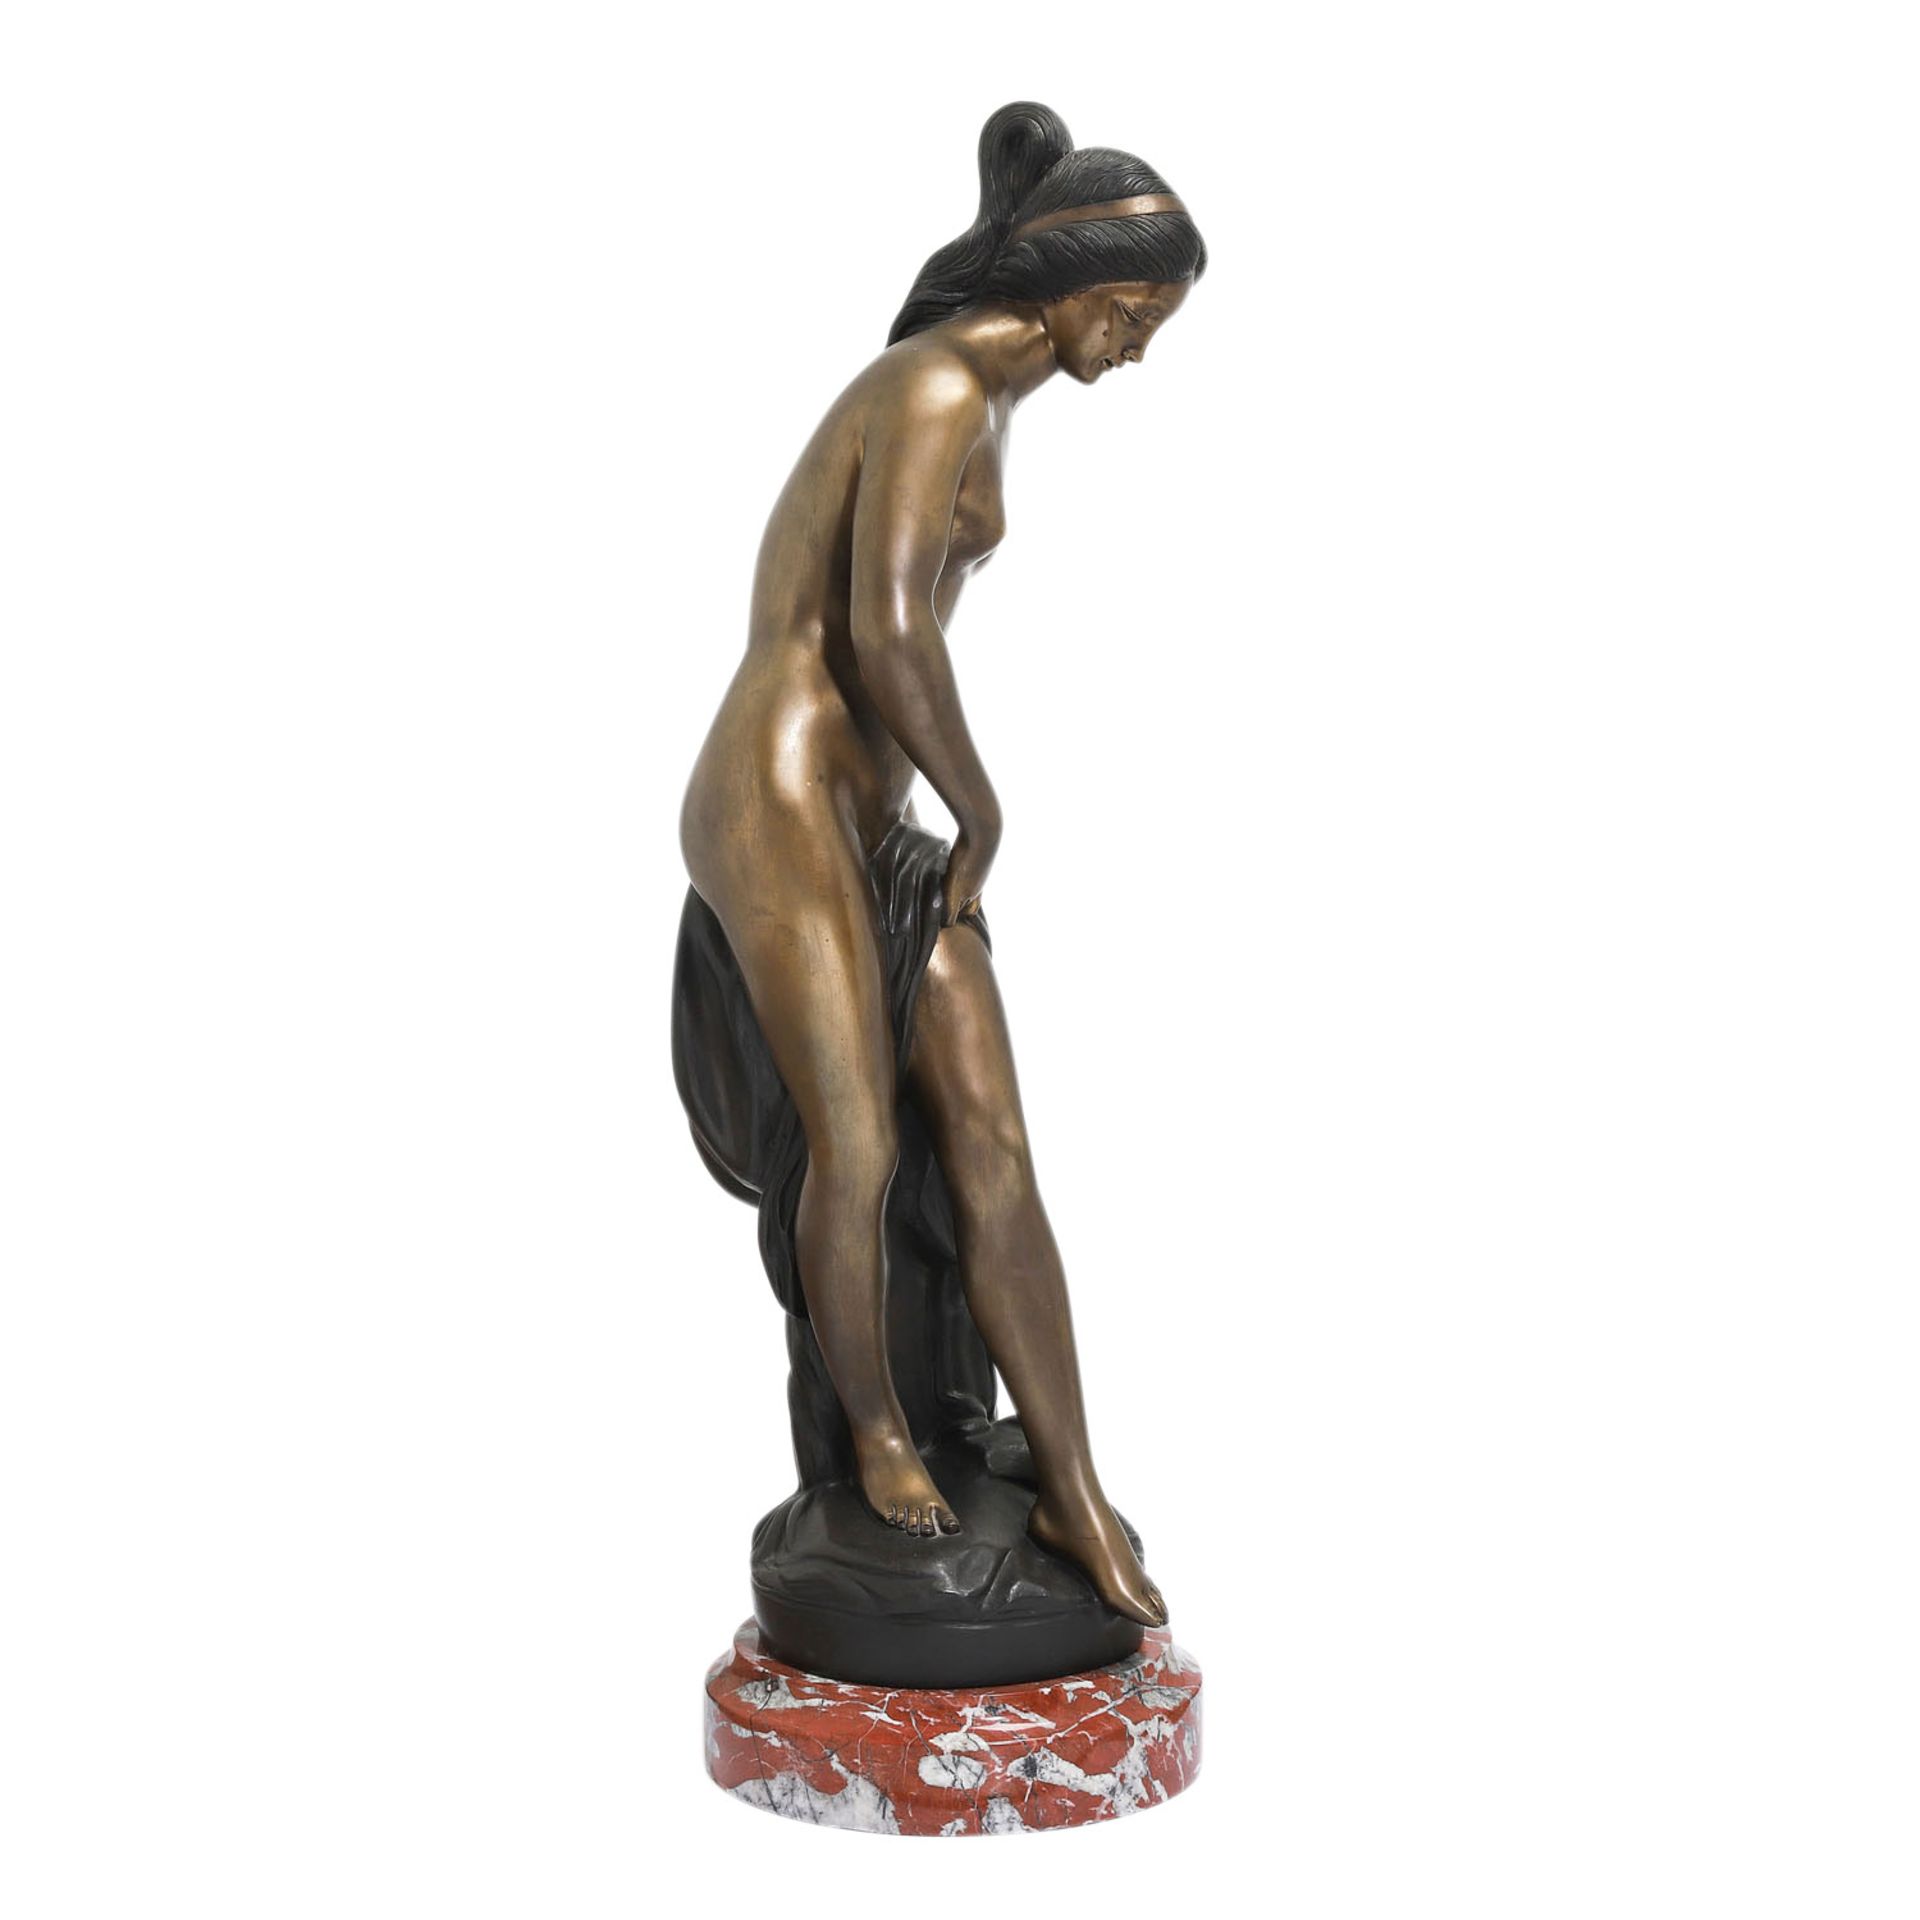 MOREAU 'Badende', 20. Jh..Bronze, stehende weibliche Aktfigur mit Tuch, bez. 'Moreau', auf rundem - Bild 2 aus 6